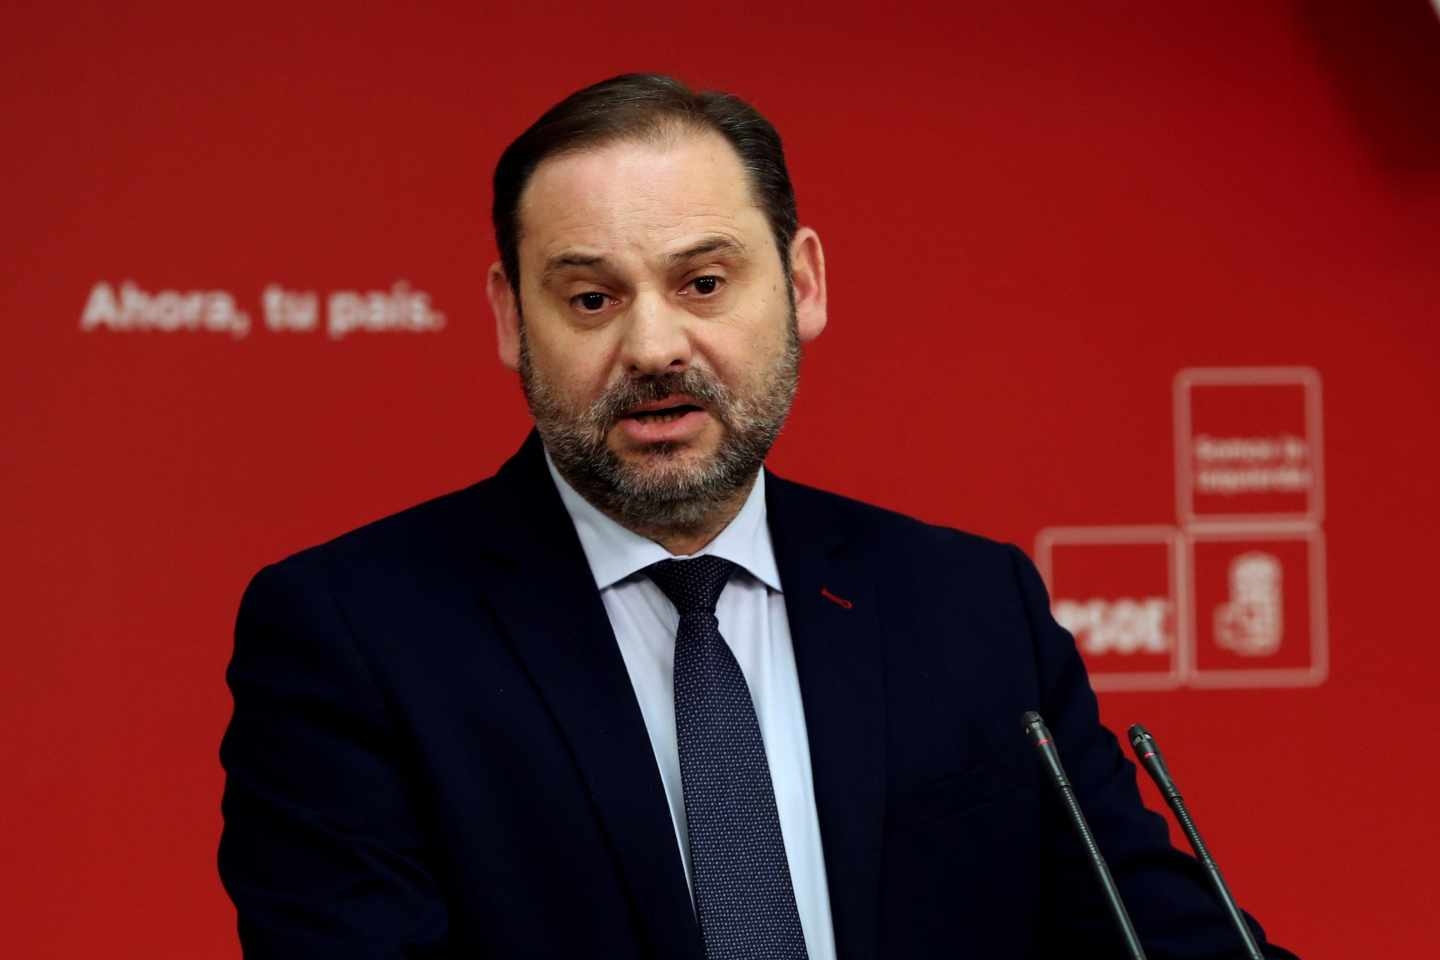 El PSOE abre la puerta a acuerdos con el PP: "Este país necesita soluciones"